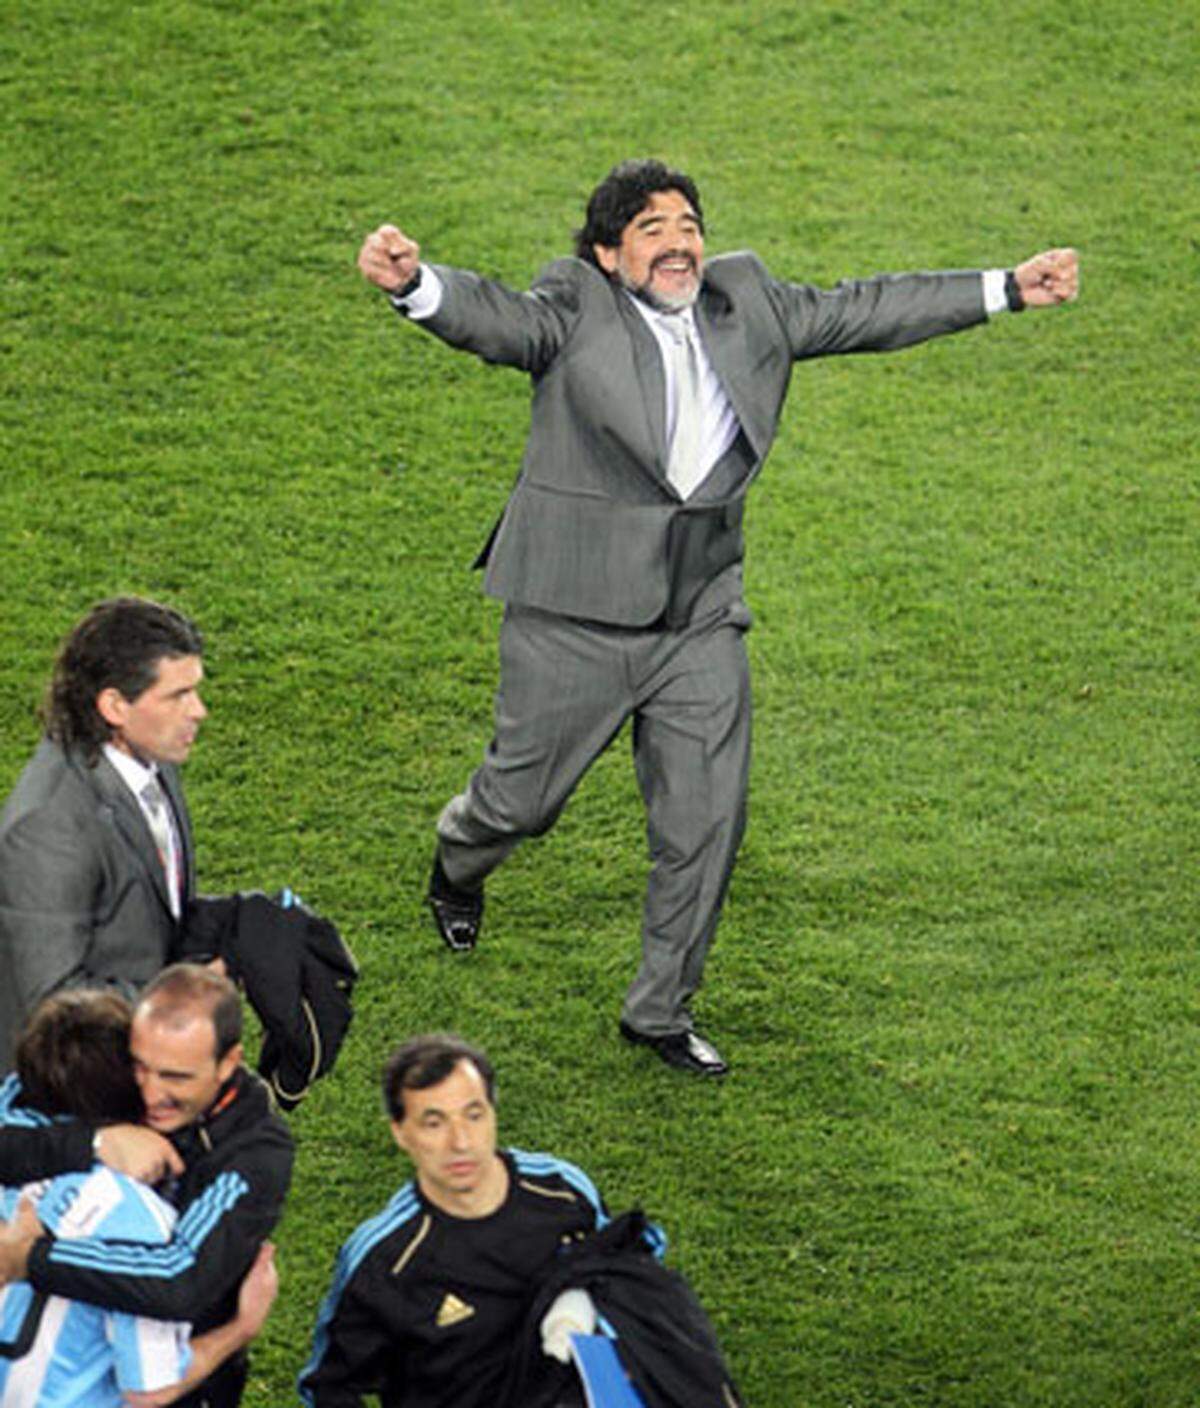 Am 12. Juni 2010 warf sich Maradona für sein erstes WM-Spiel als Trainer in feinen grauen Zwirn. Gegen Nigeria feierte sein Team einen verdienten 1:0-Sieg. Auch die beiden anderen Spiele in der Vorrunde gewann Argentinien: Südkorea wurde 4:1 besiegt, gegen Griechenland gab es ein 2:0.